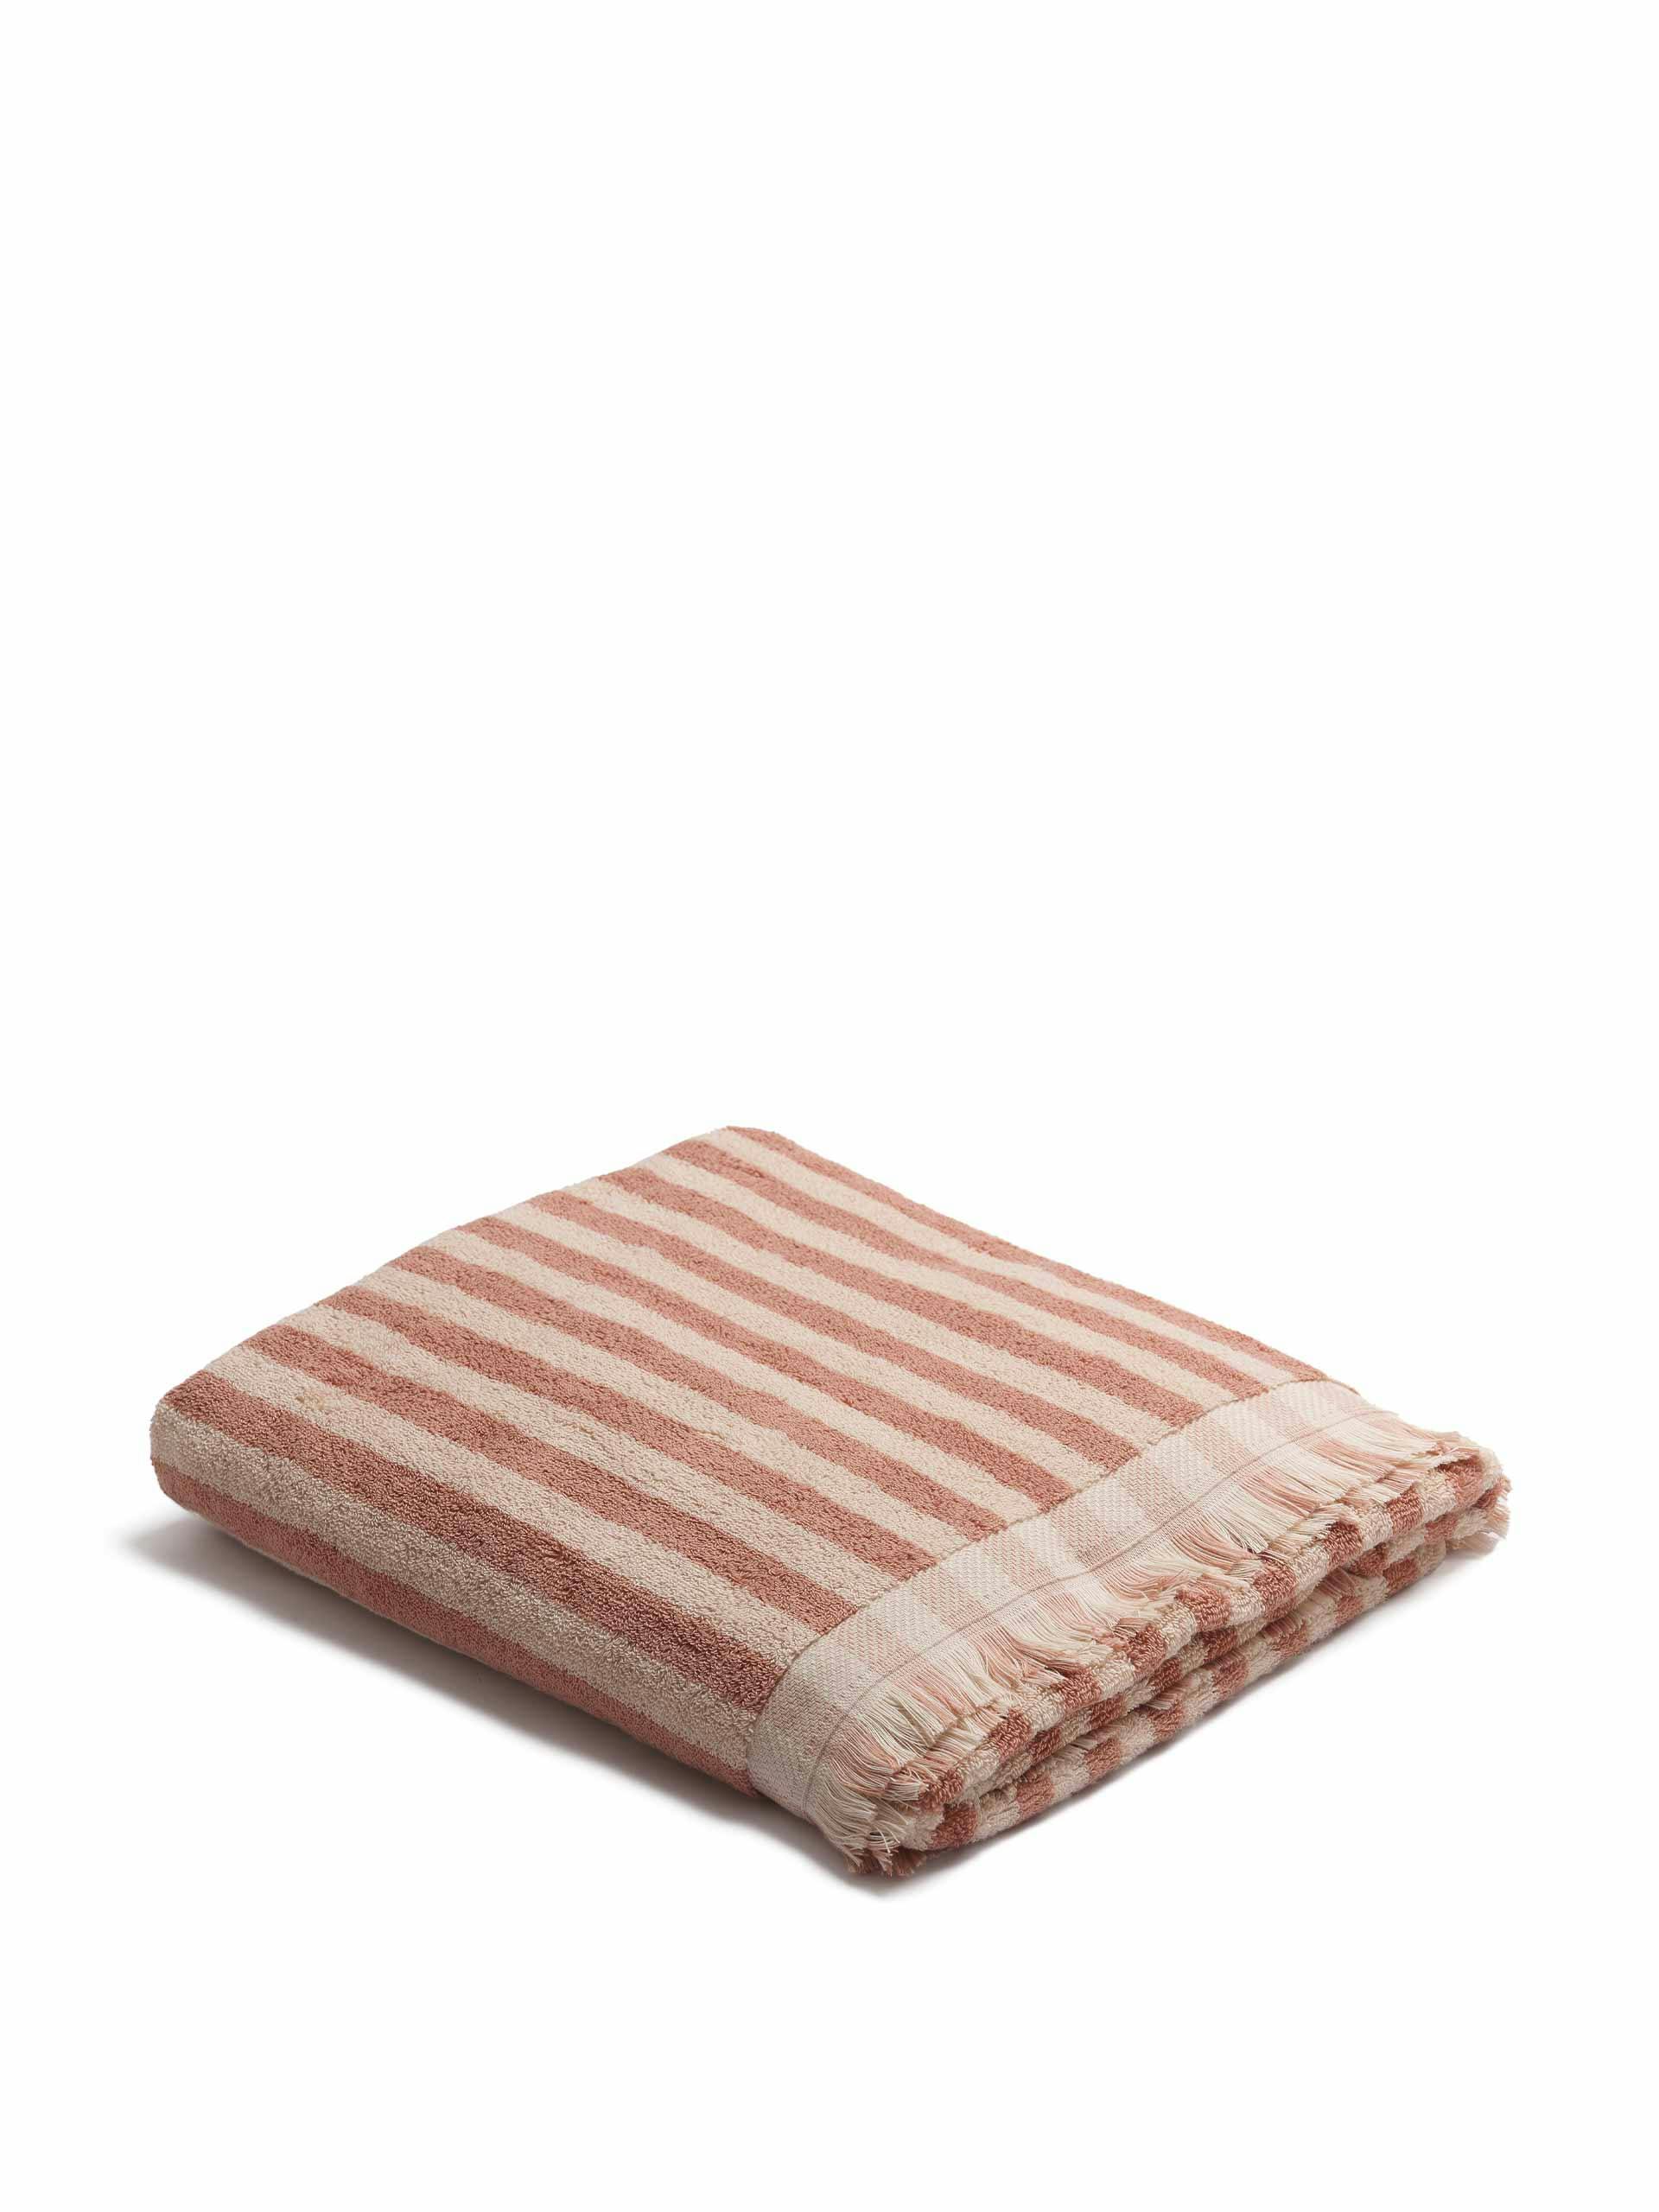 Pembroke Stripe cotton towels in Sand Shell